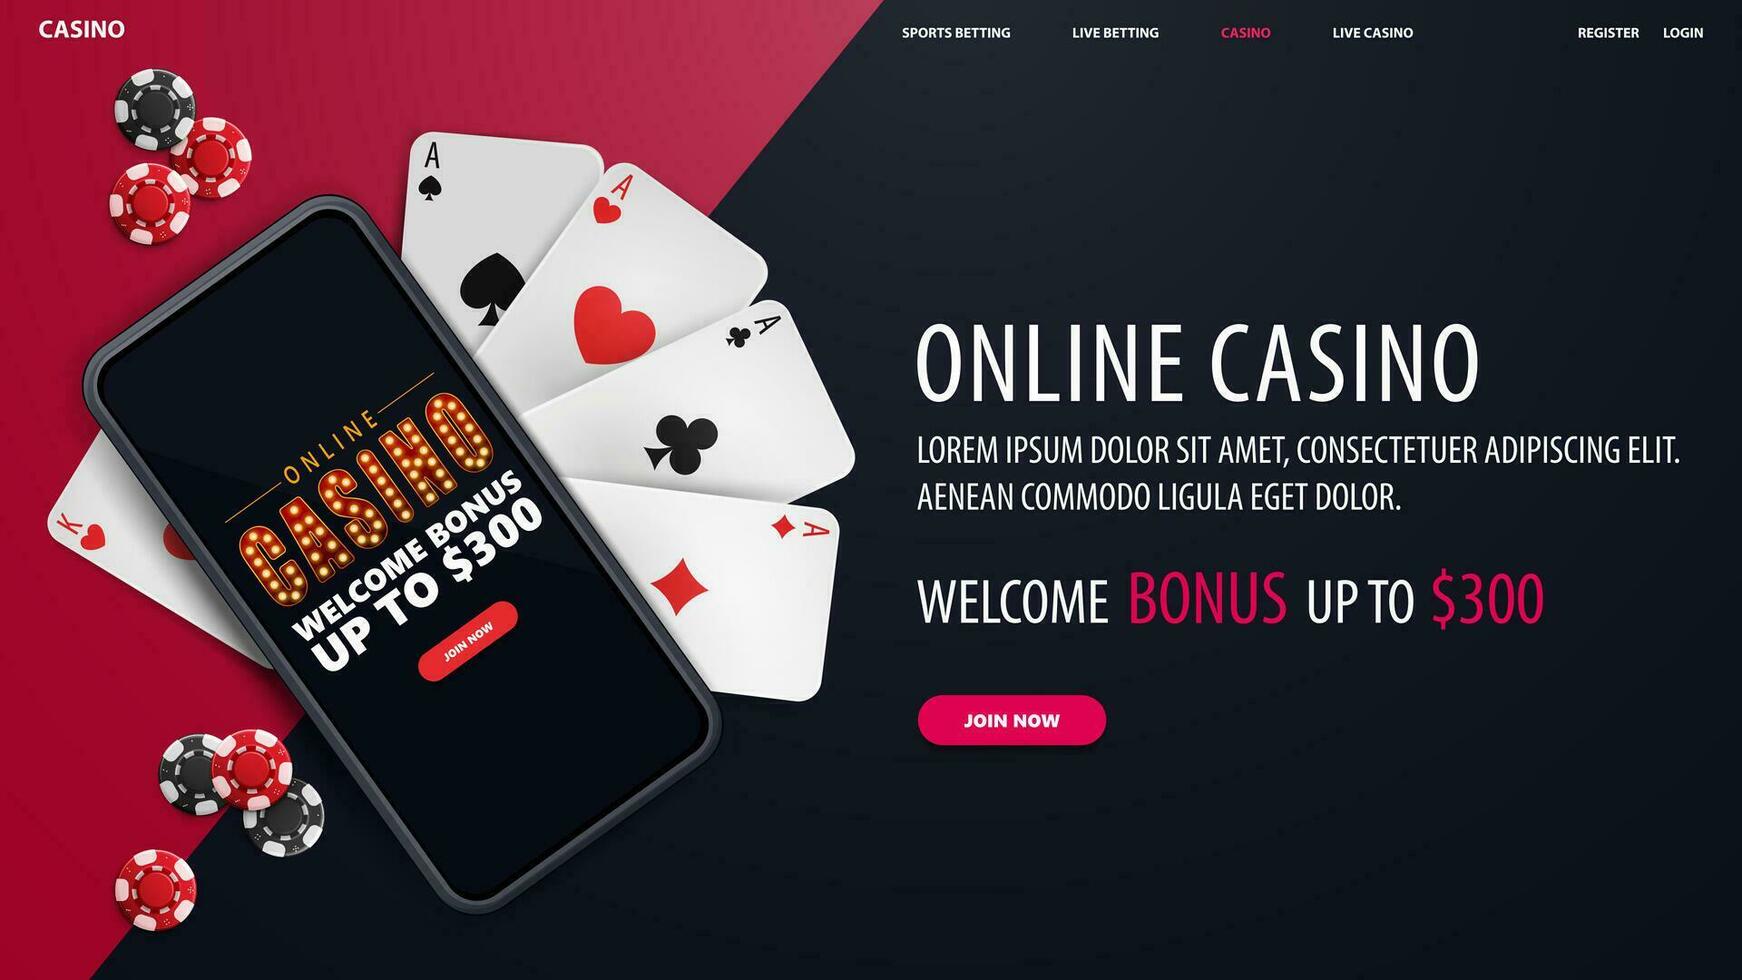 online casino, blauwe banner met smartphone met aanbieding, speelkaarten en pokerfiches, bovenaanzicht vector